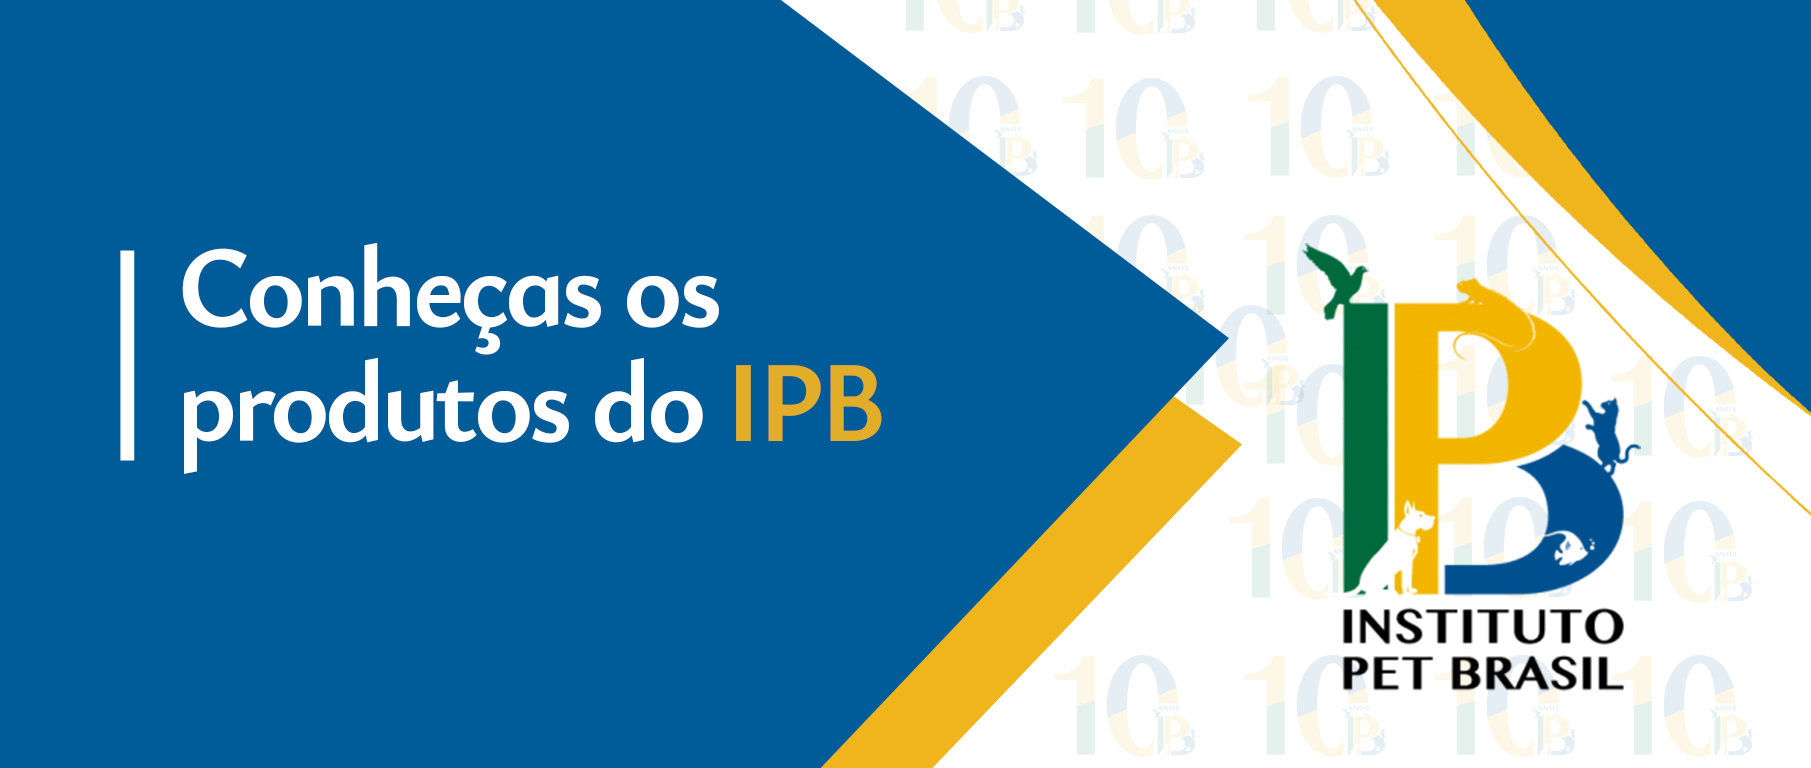 Instituto Pet Brasil - IPB